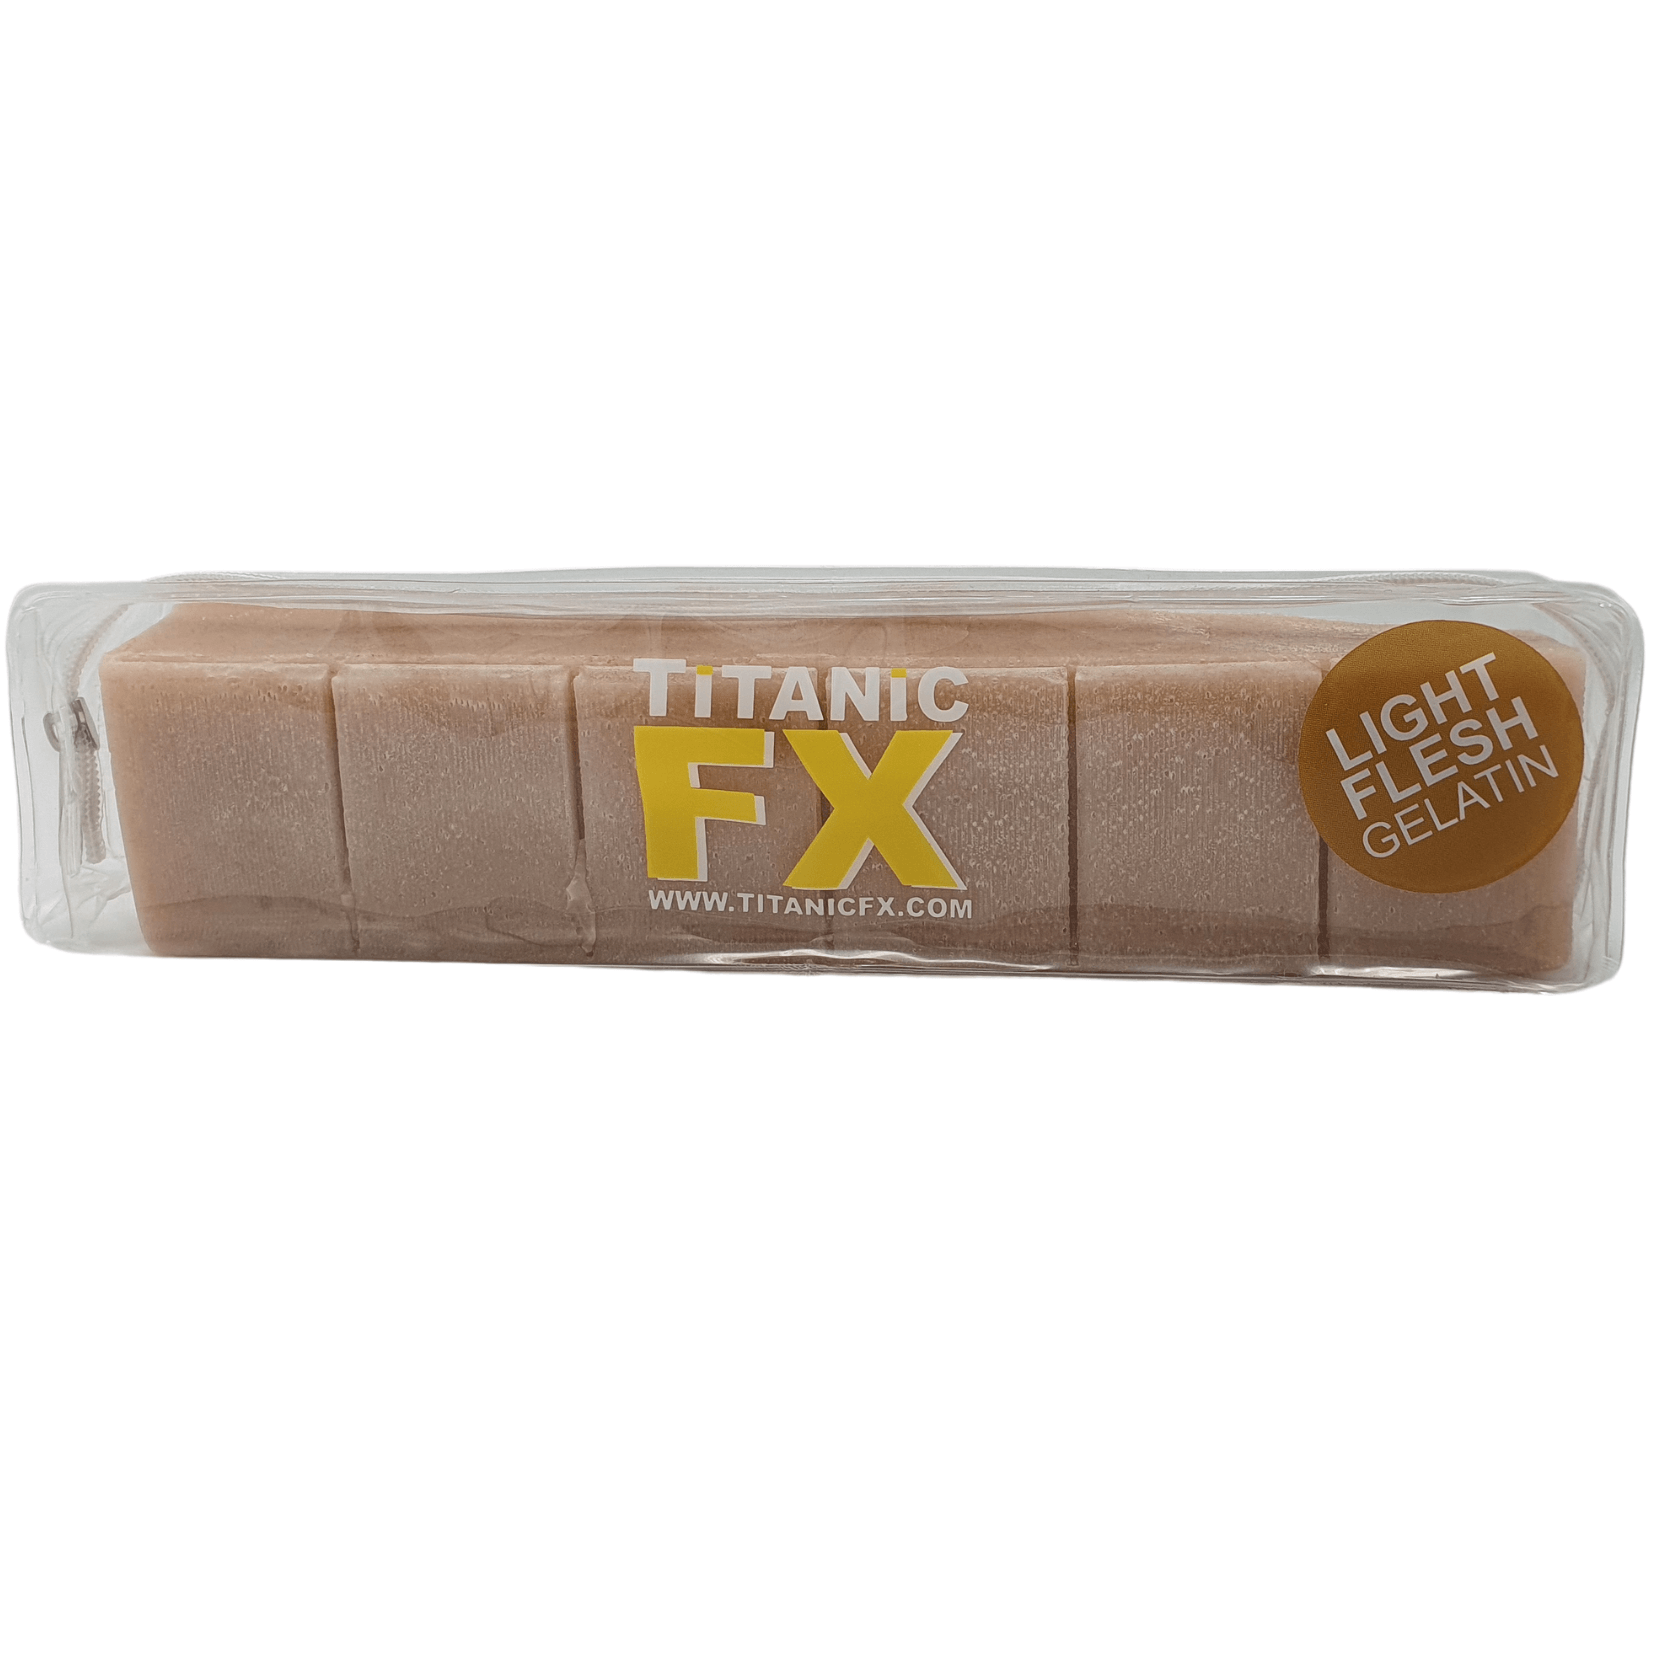 Titanic FX Gelatine Light Flesh 500gr | Prothese Gelatine